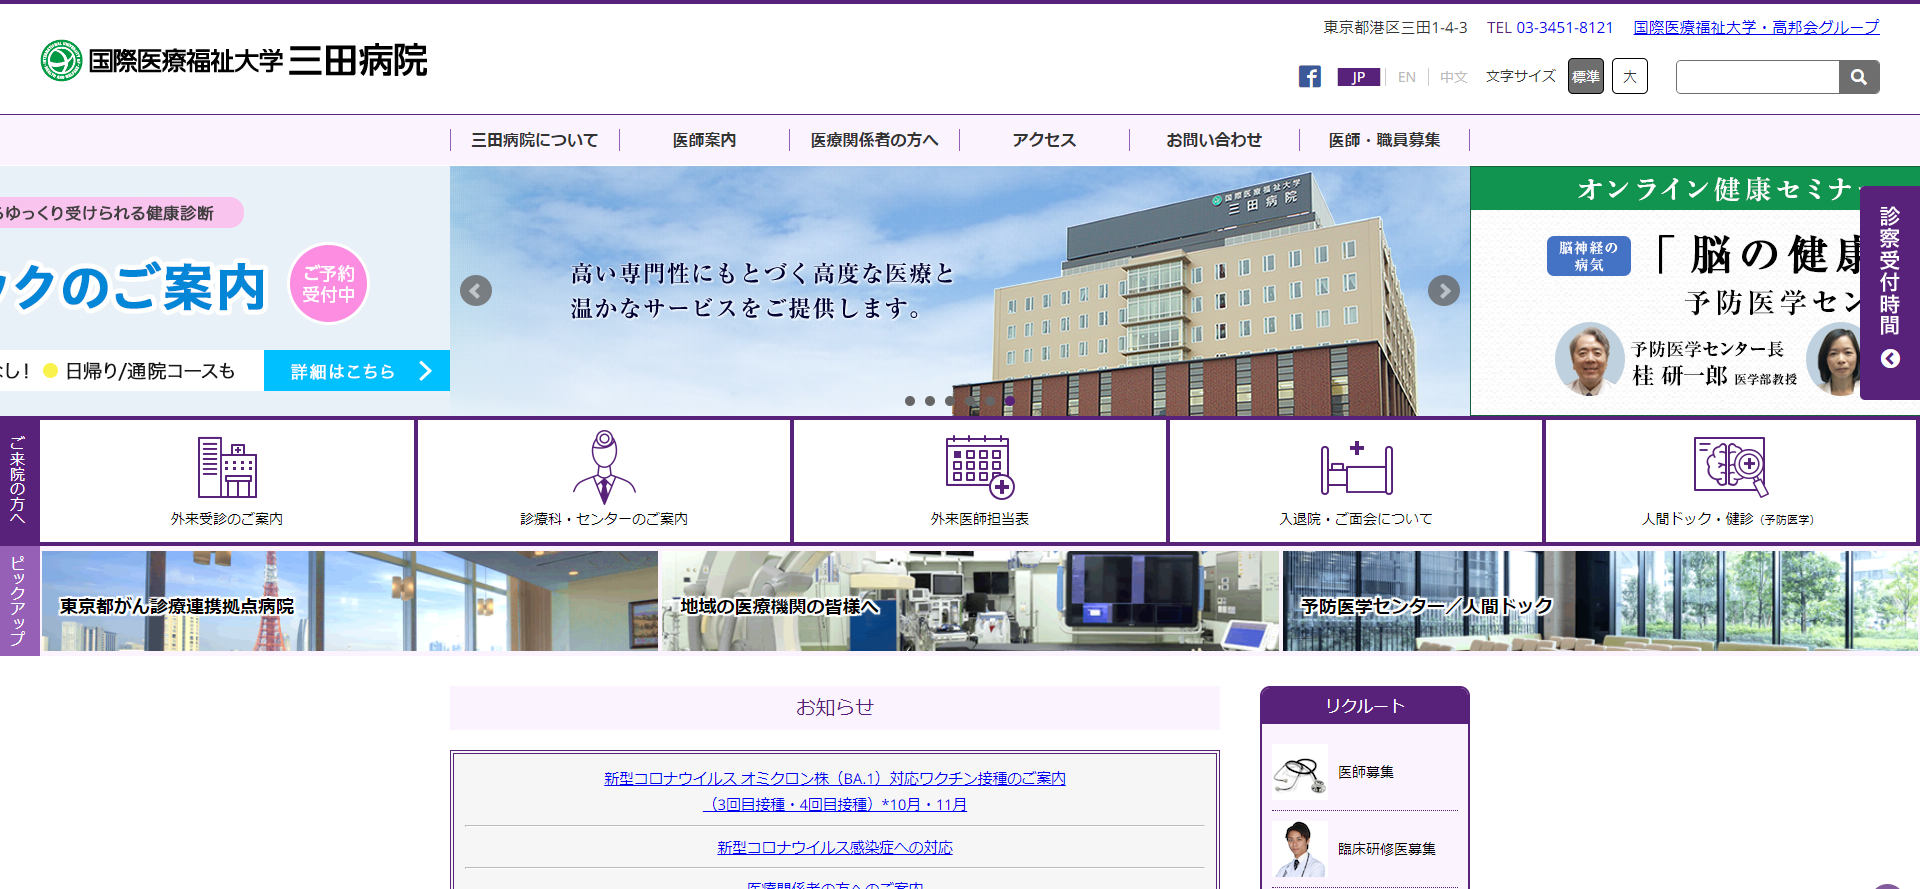 国際医療福祉大学三田病院